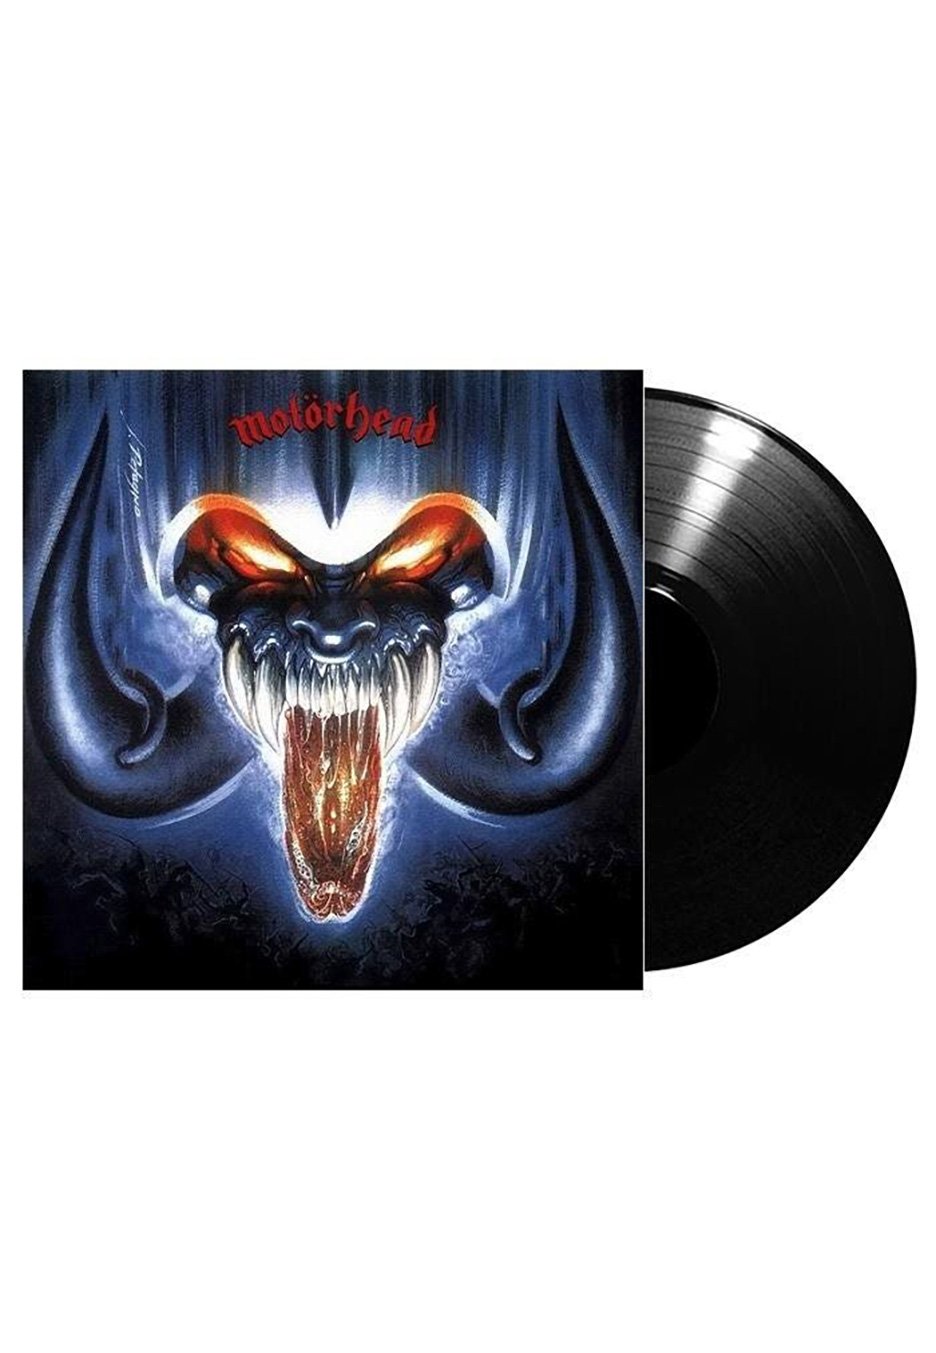 Motörhead - Rock 'N' Roll - Vinyl